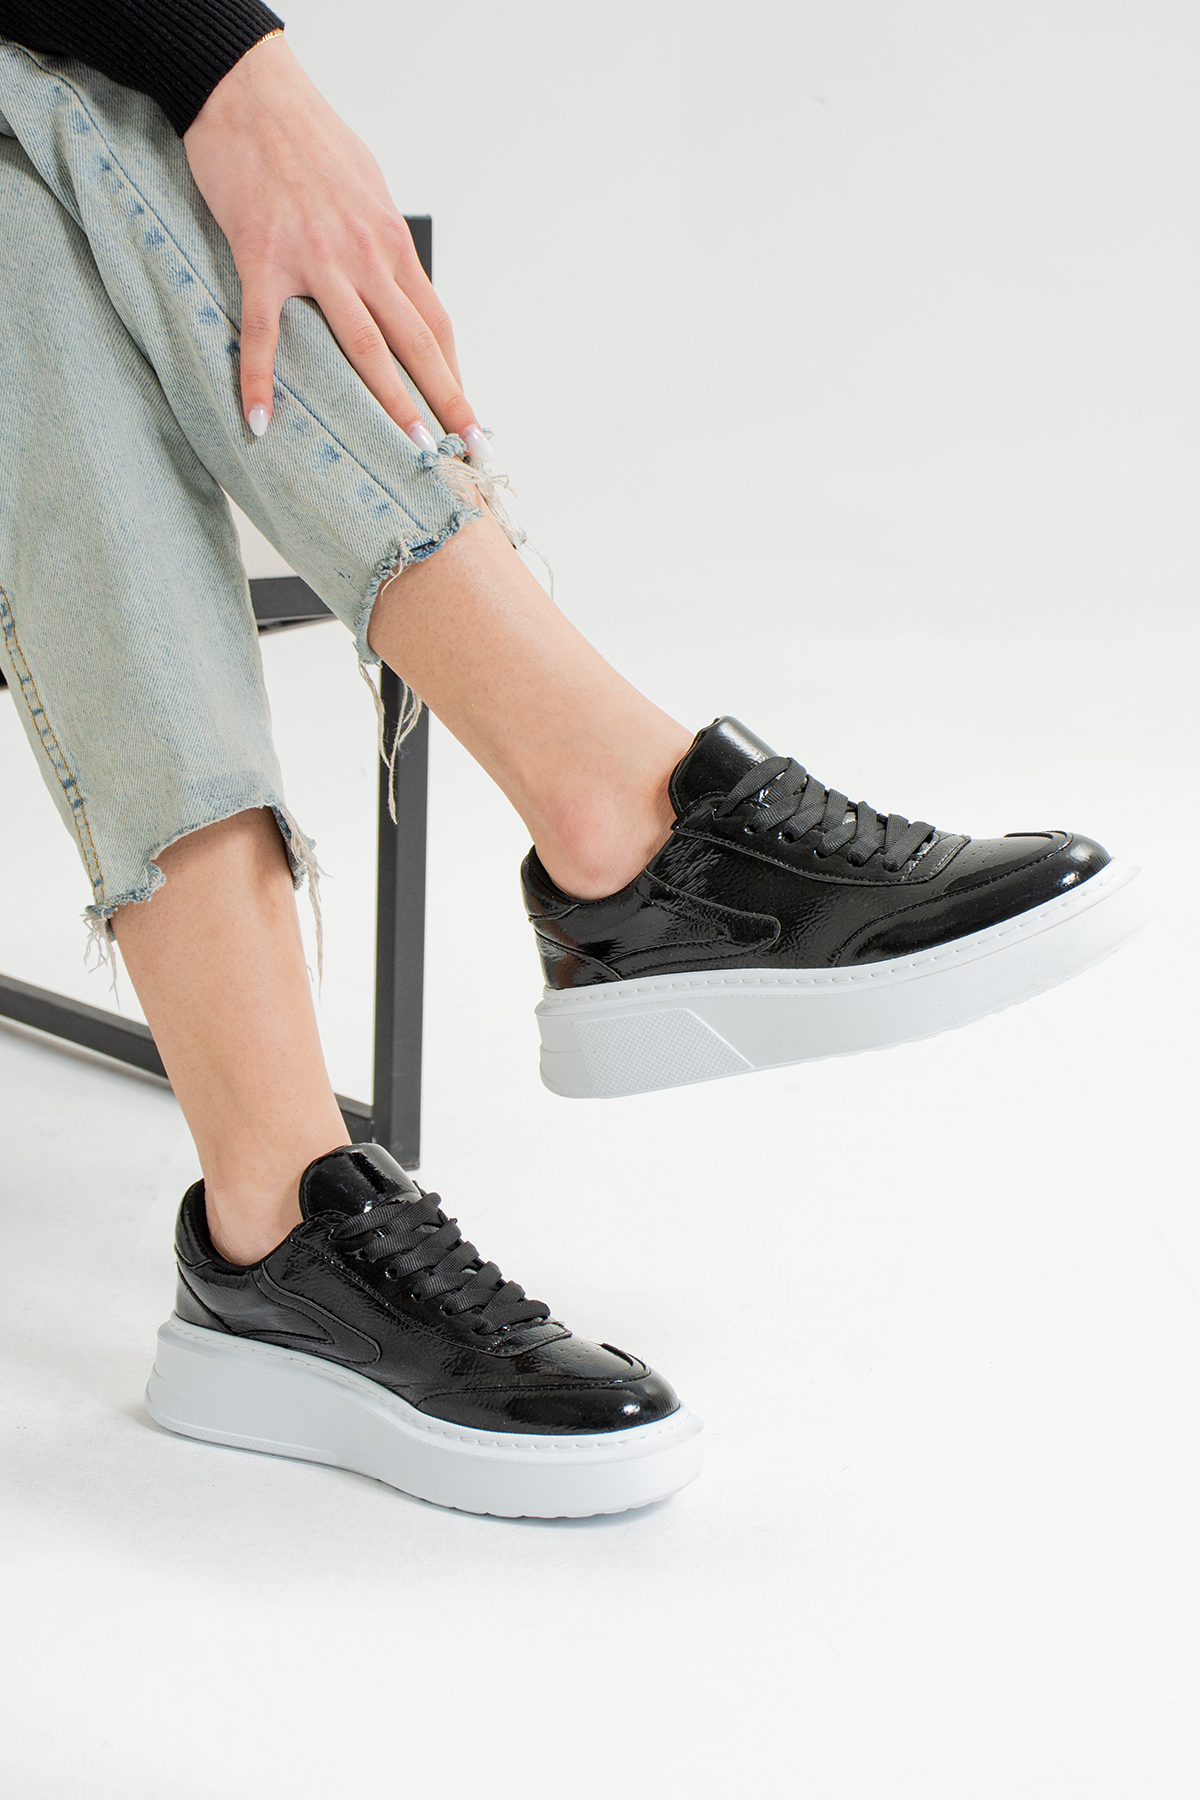 Siyah Rugan (Beyaz Taban) Bağcıklı Günlük Hafif Ortapedik Taban Kadın Sneaker